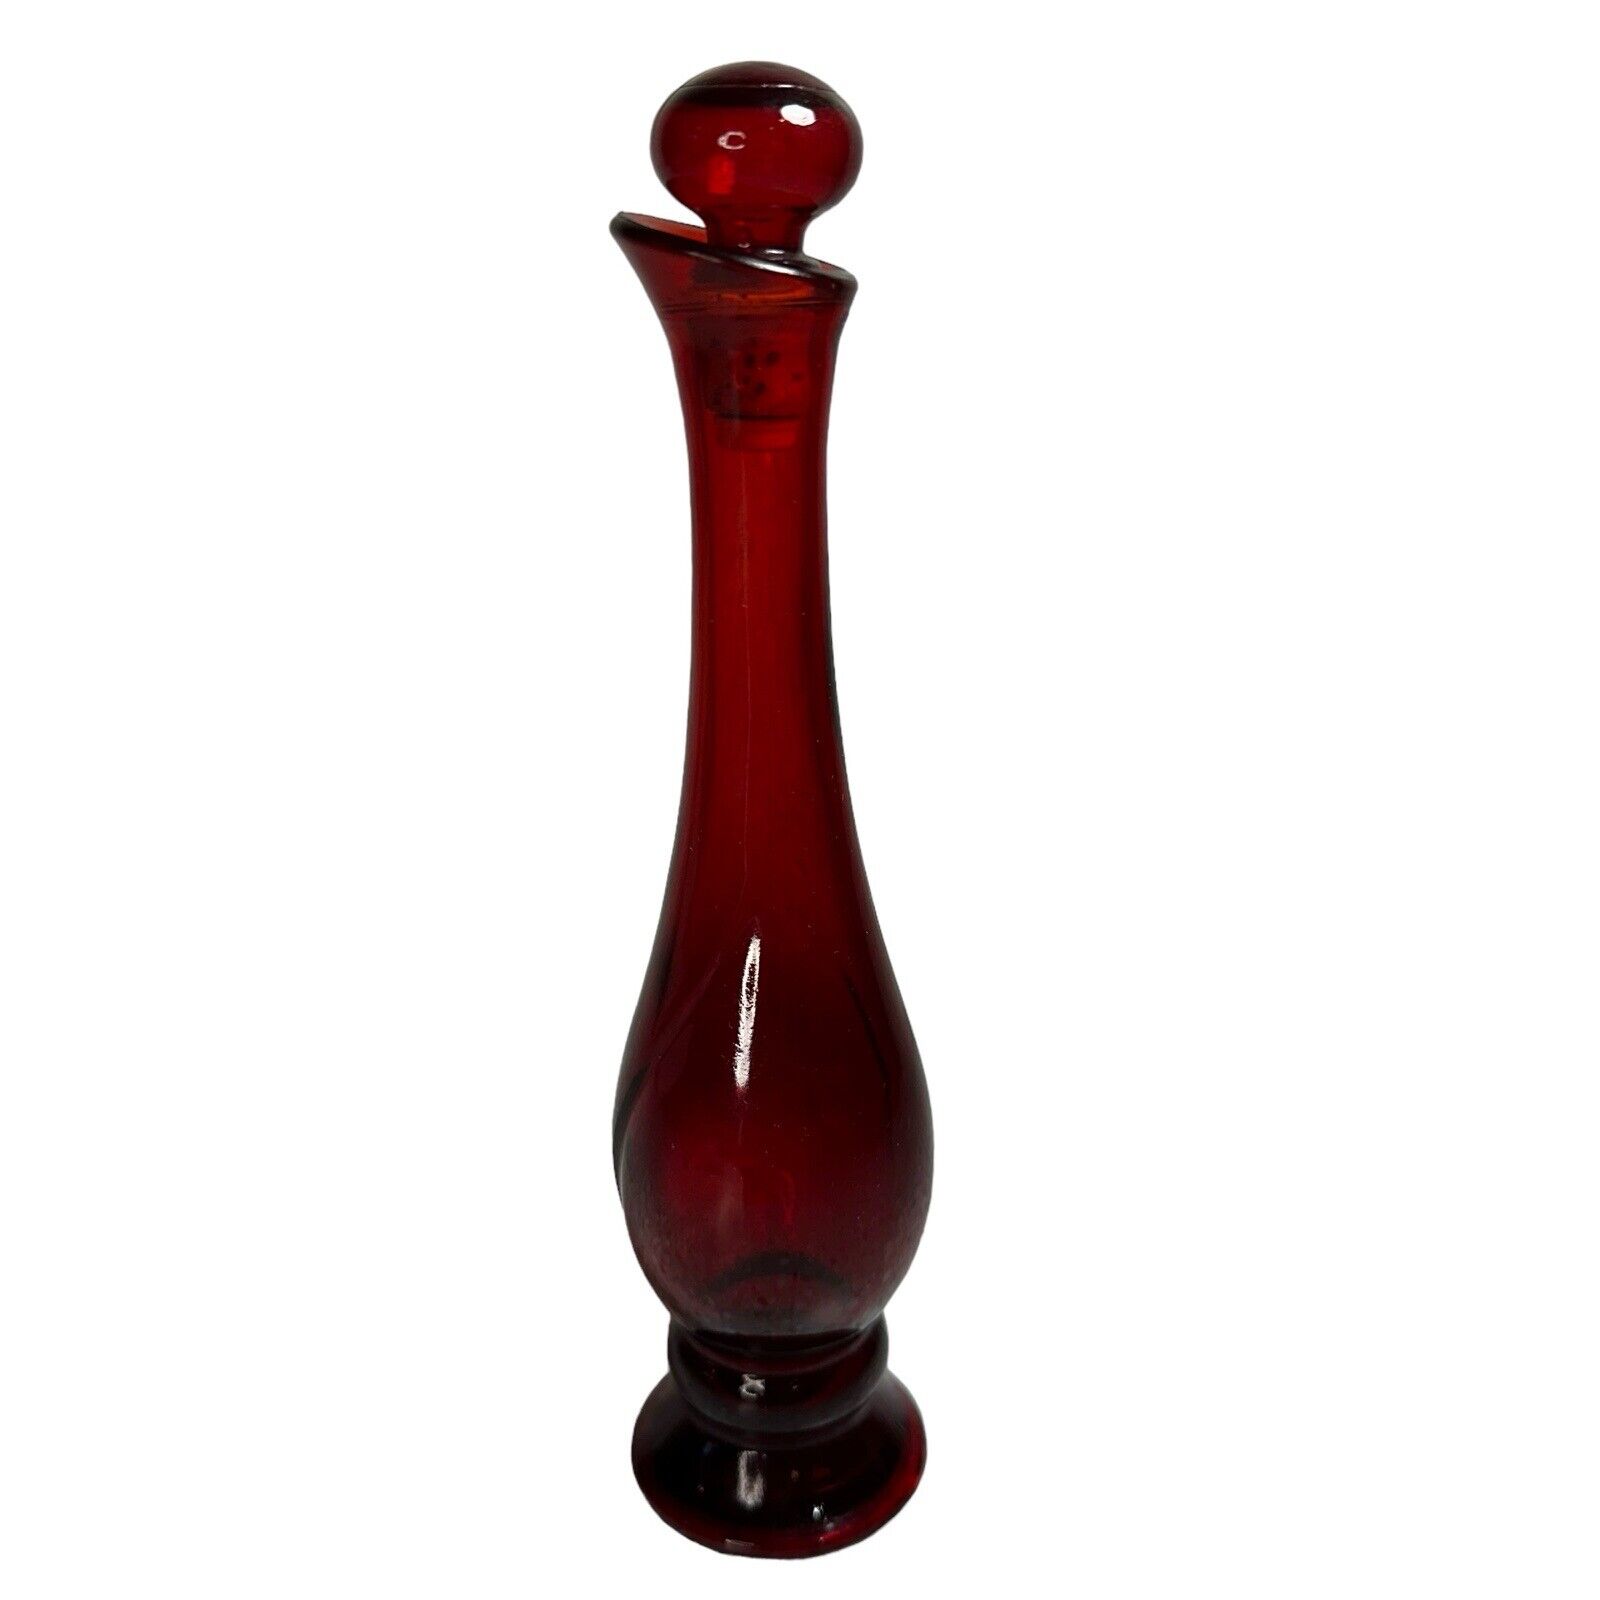 VTG Avon Ruby Bud Vase Cologne Perfume Bottle Red 8.25” Tall Ball Shaped Topper